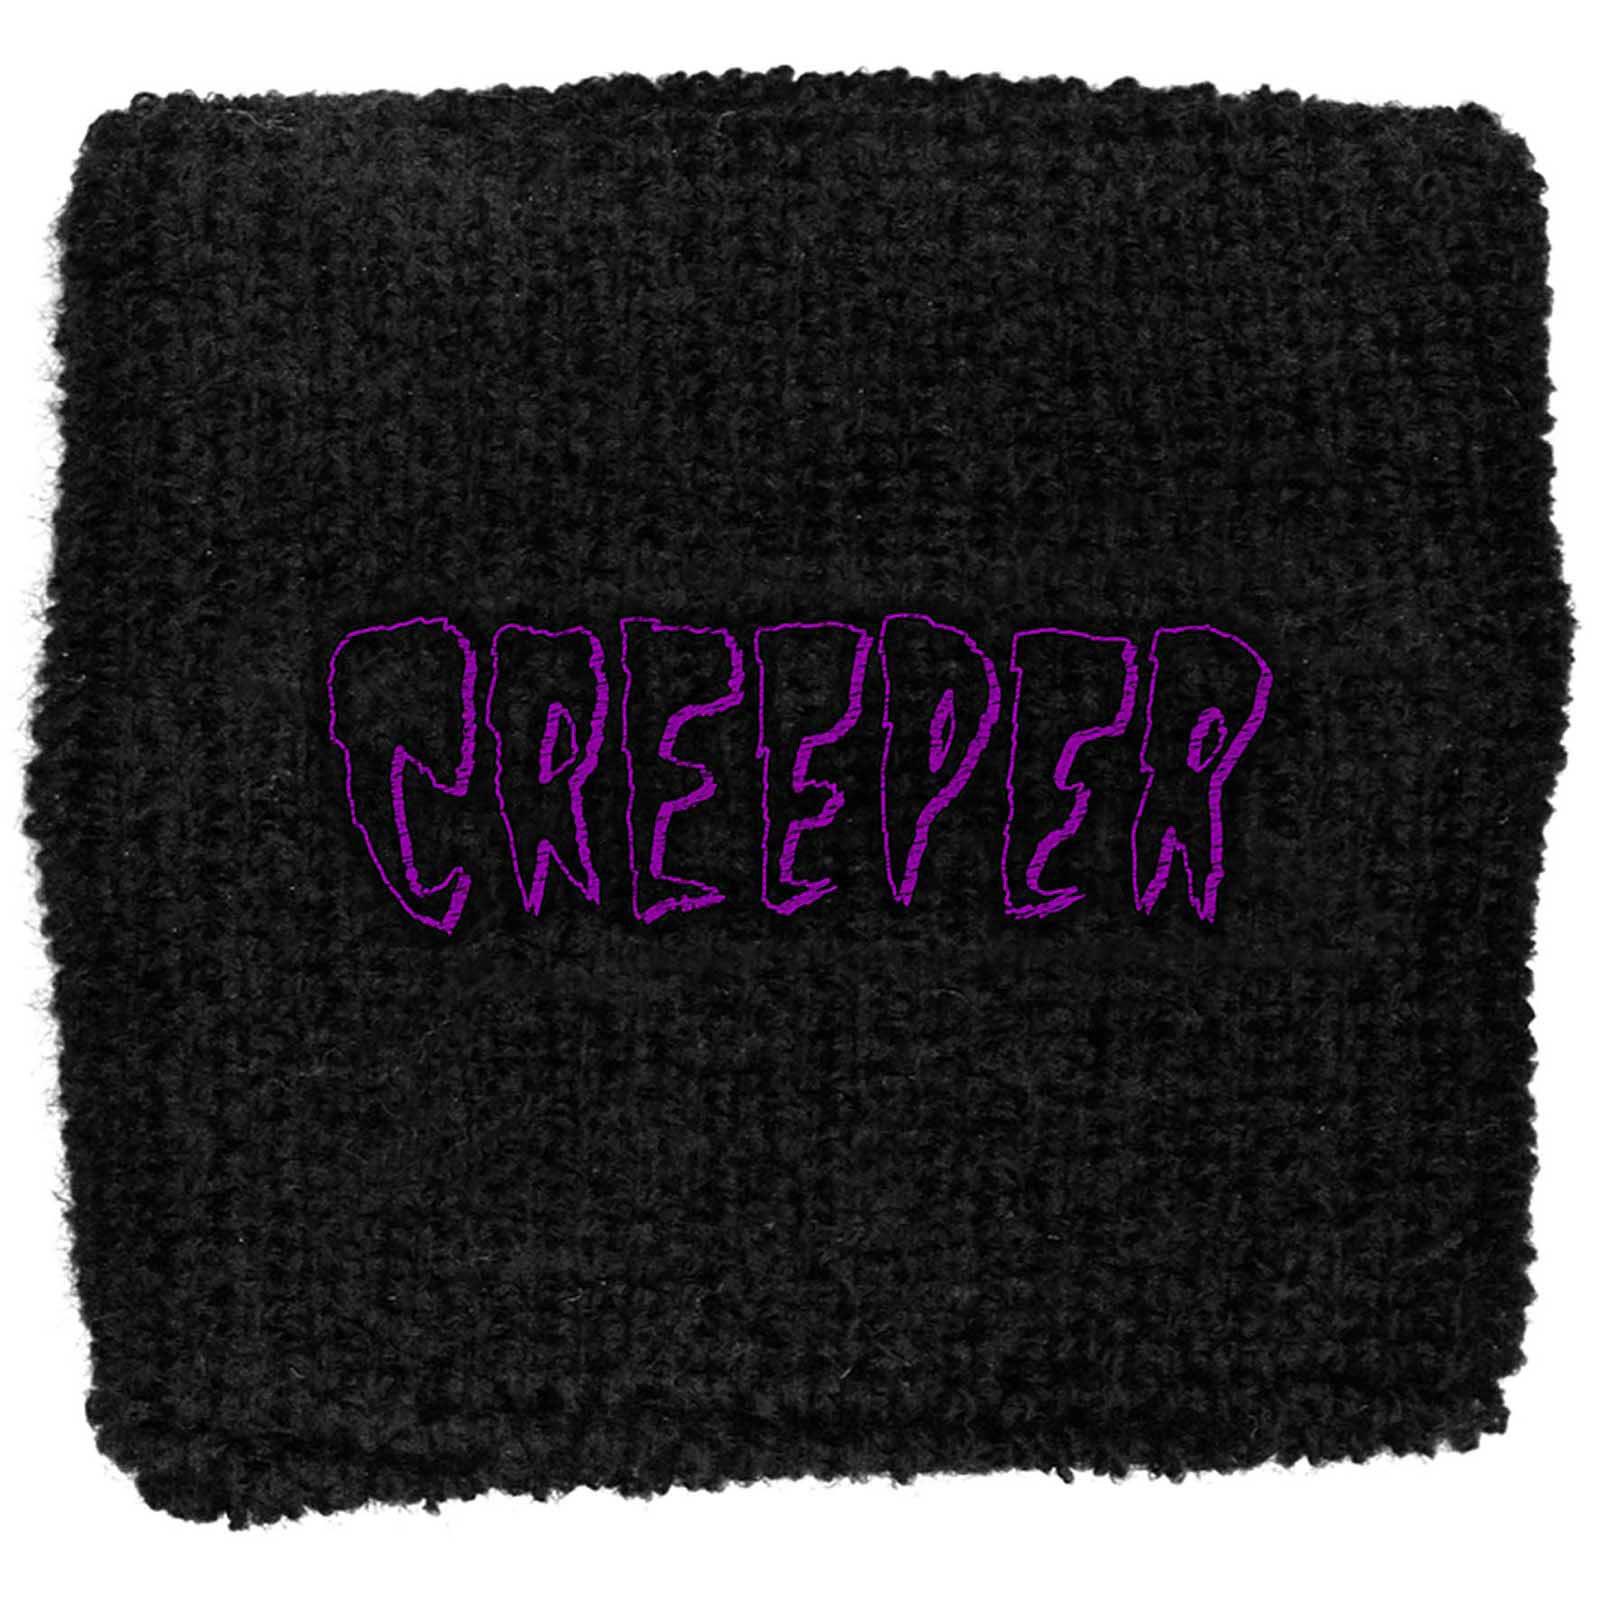 (クリーパー) Creeper オフィシャル商品 ユニセックス 布製 リストバンド スエットバンド 【海外通販】